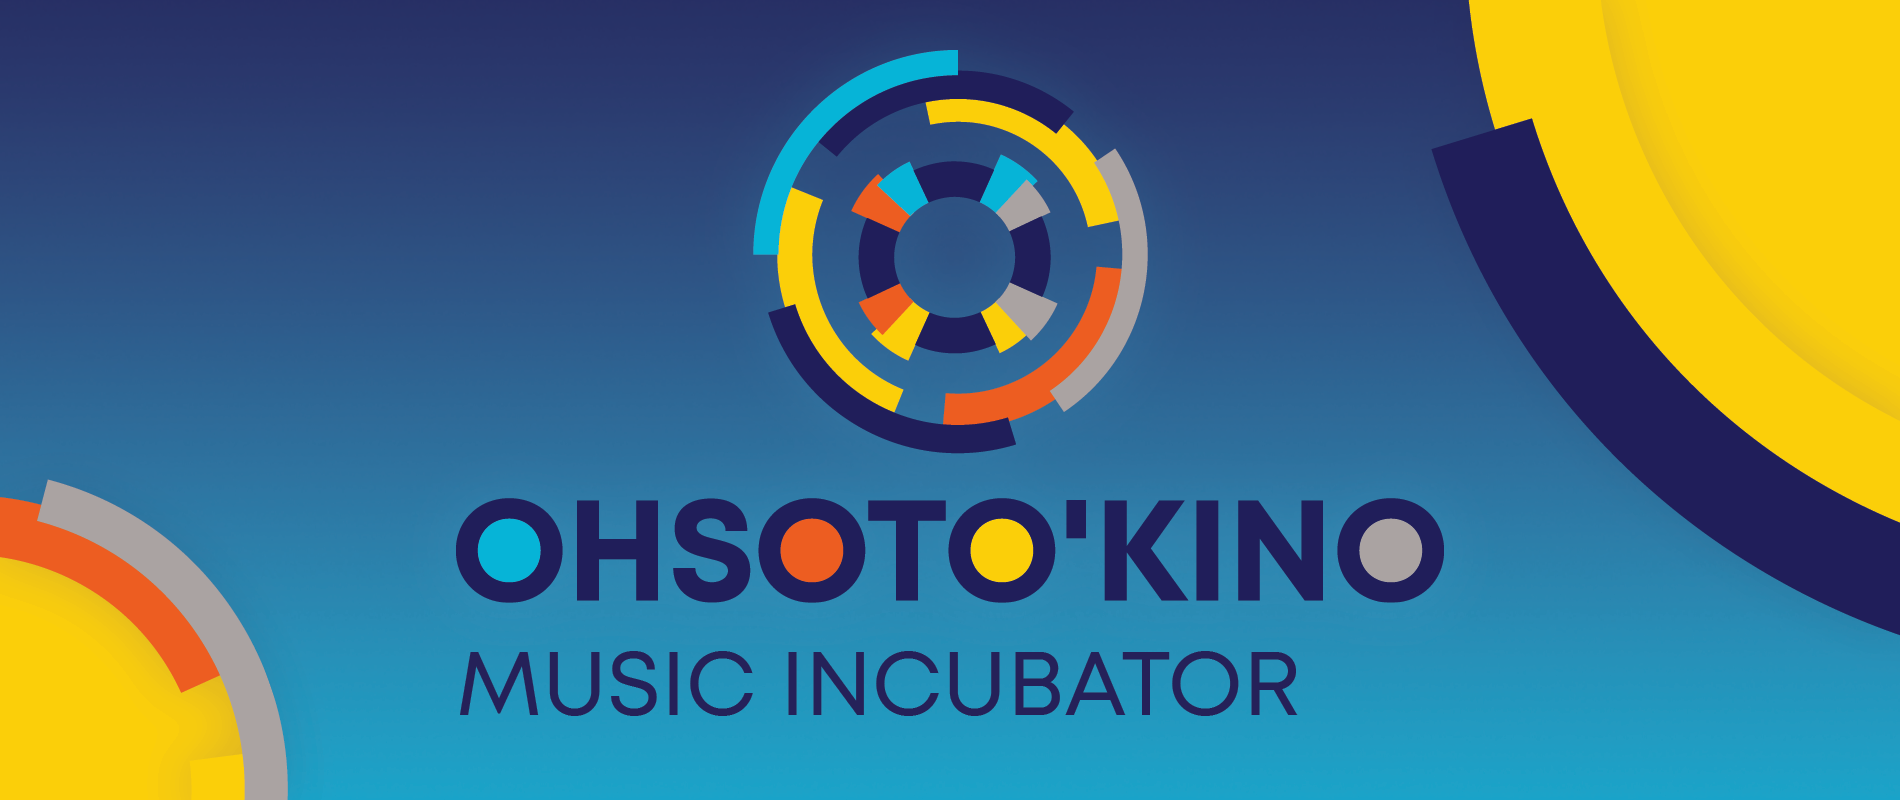 OHSOTO’KINO Music Incubator